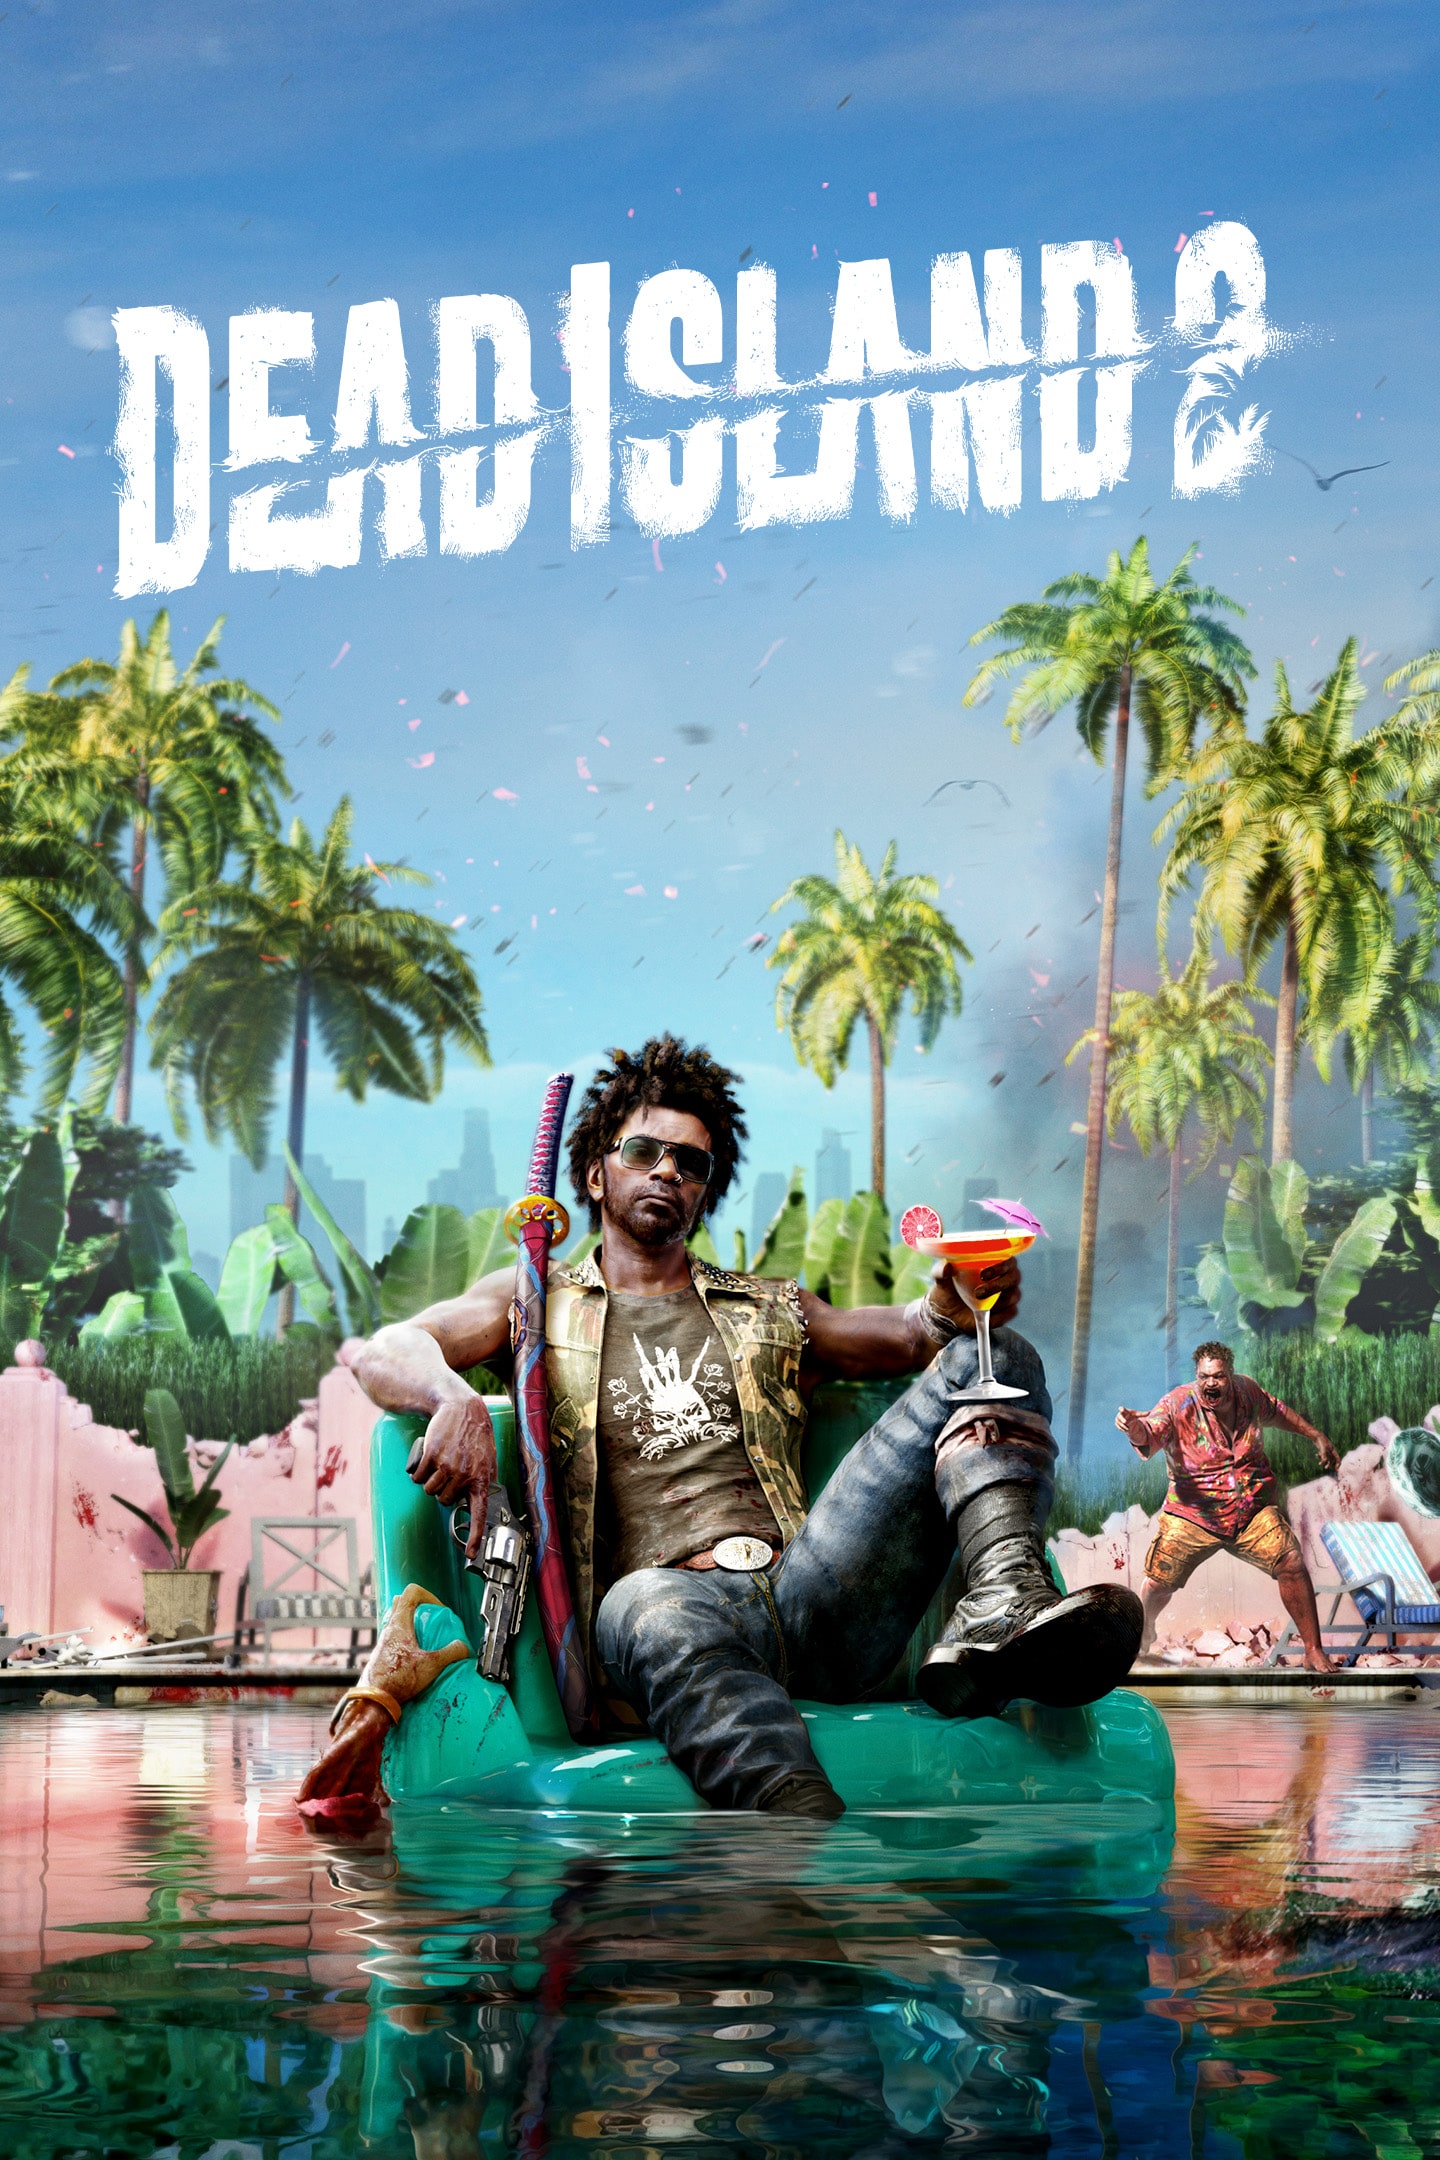 Is Dead Island 2 Cross-Play? 